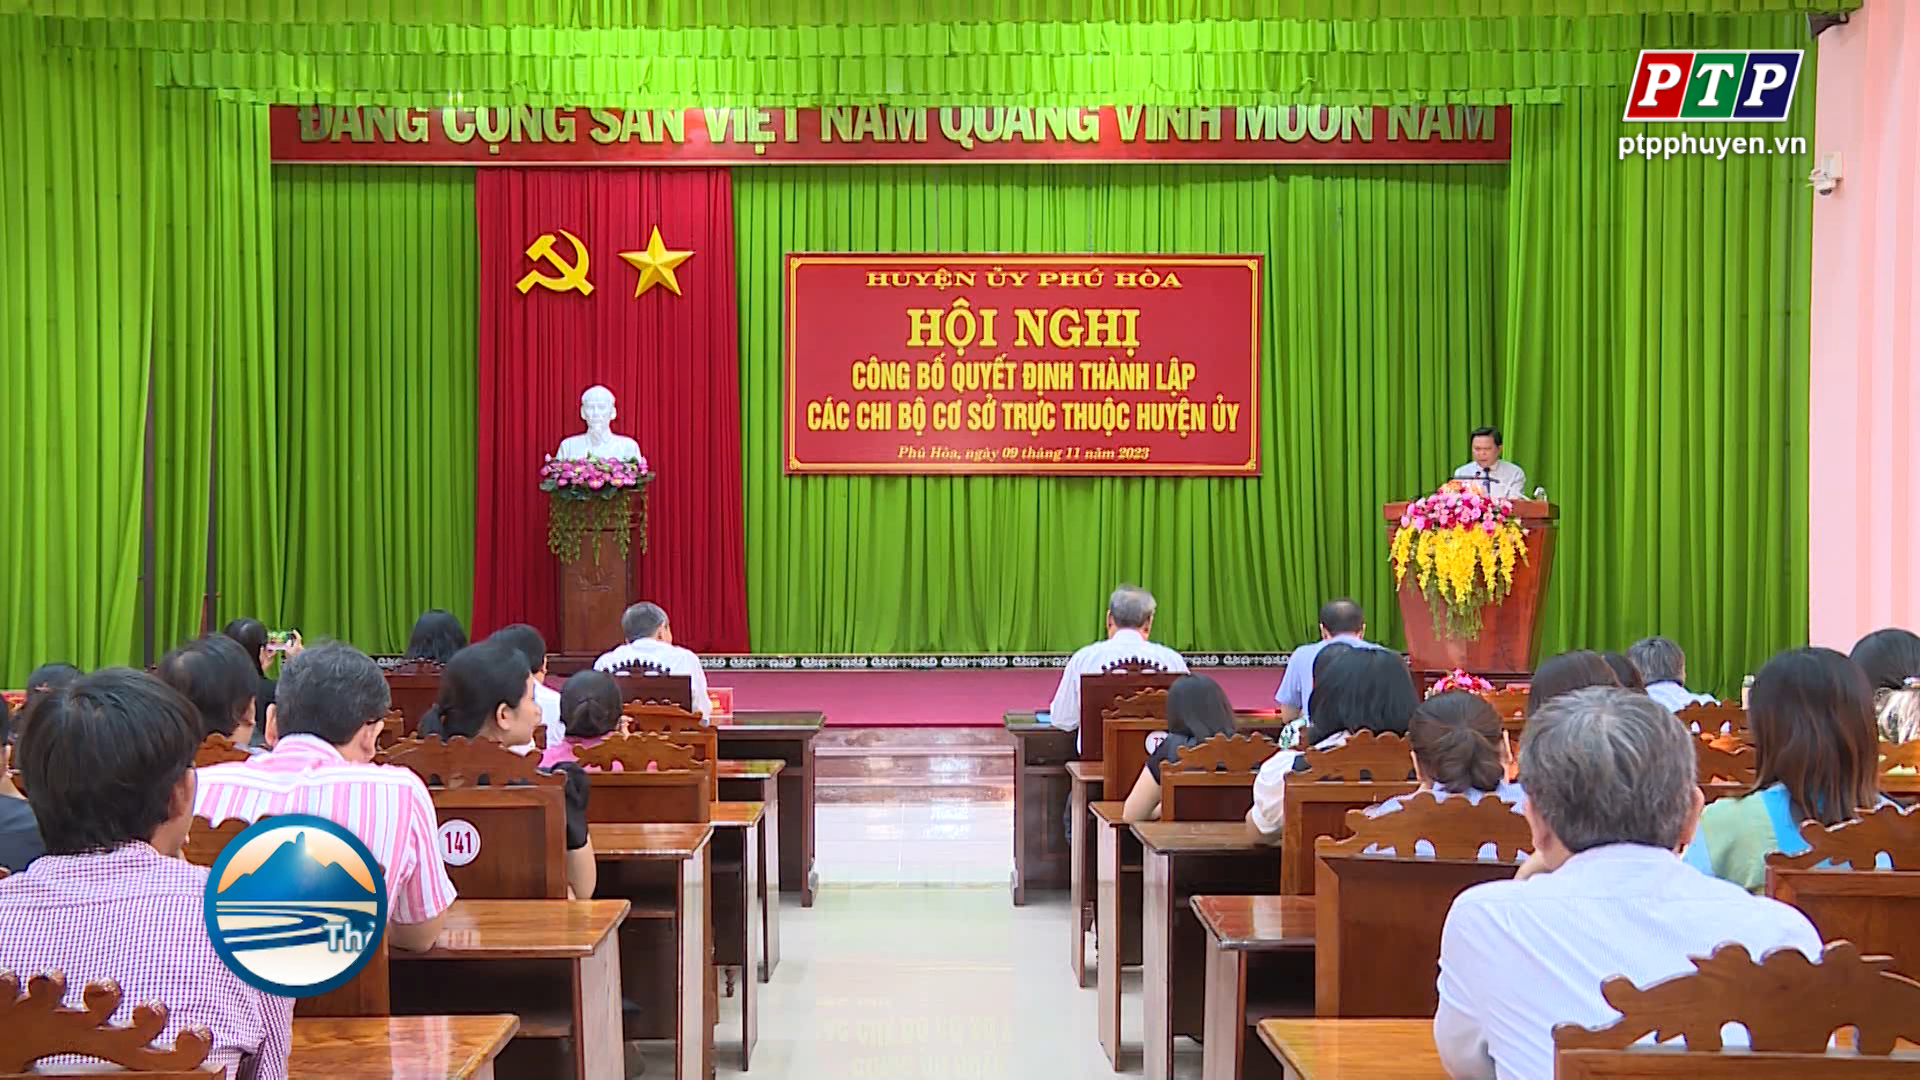 Huyện ủy Phú Hòa: công bố quyết định thành lập 12 chi bộ cơ sở trực thuộc